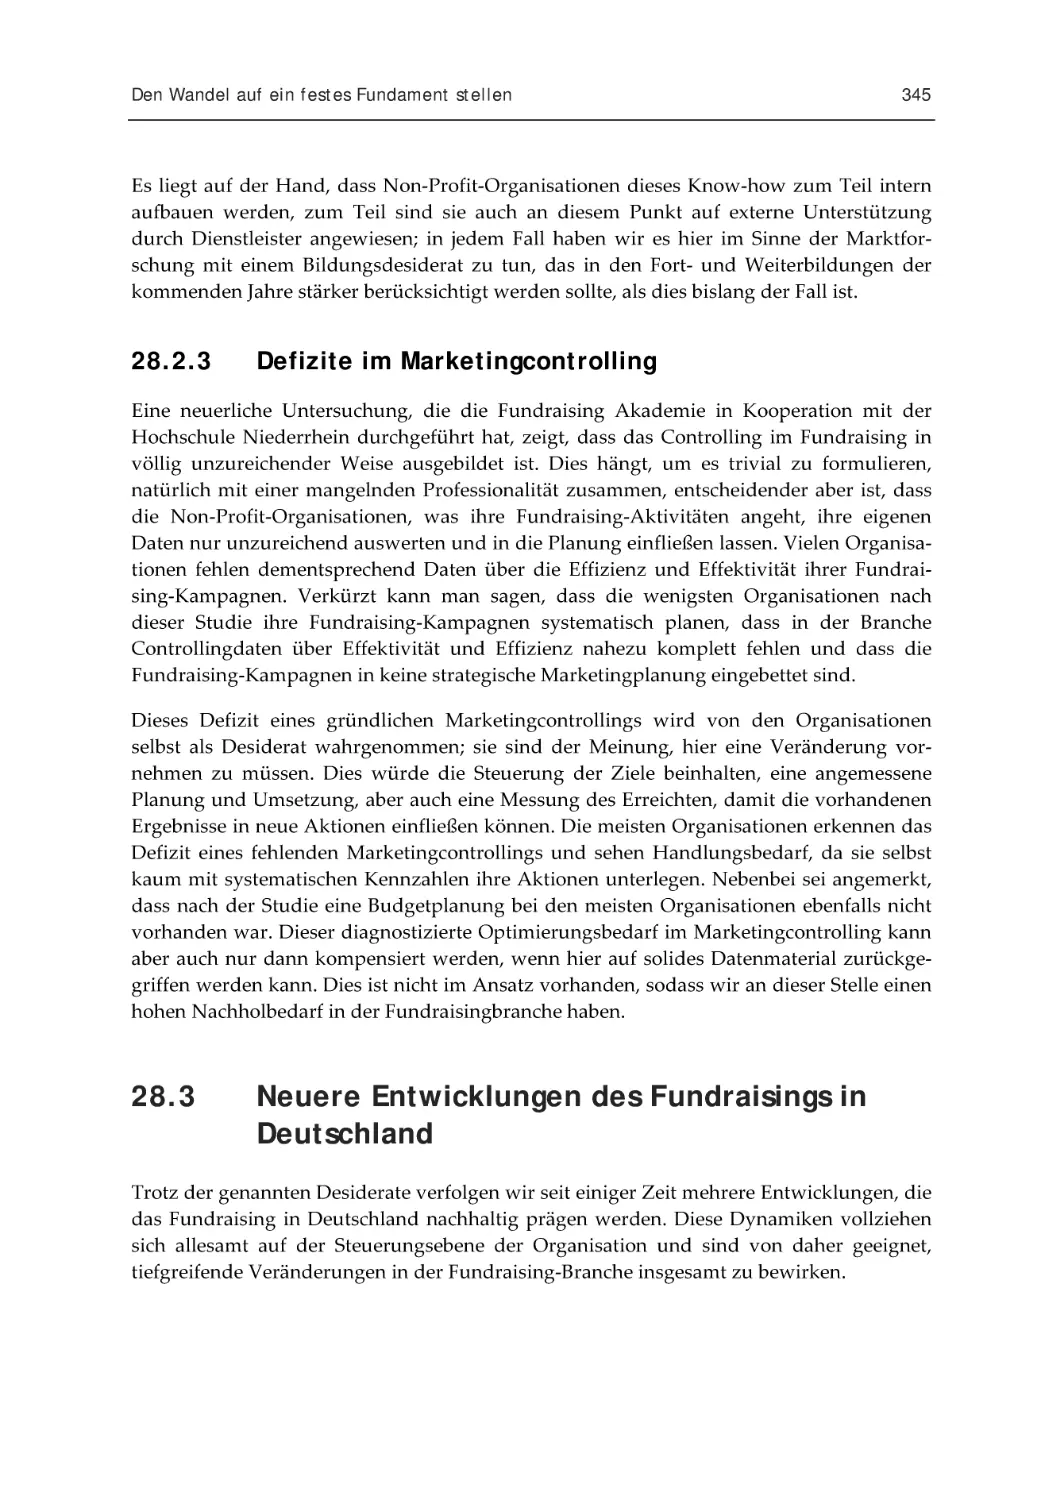 28.2.3 Defizite im Marketingcontrolling
28.3 Neuere Entwicklungen des Fundraisings in Deutschland